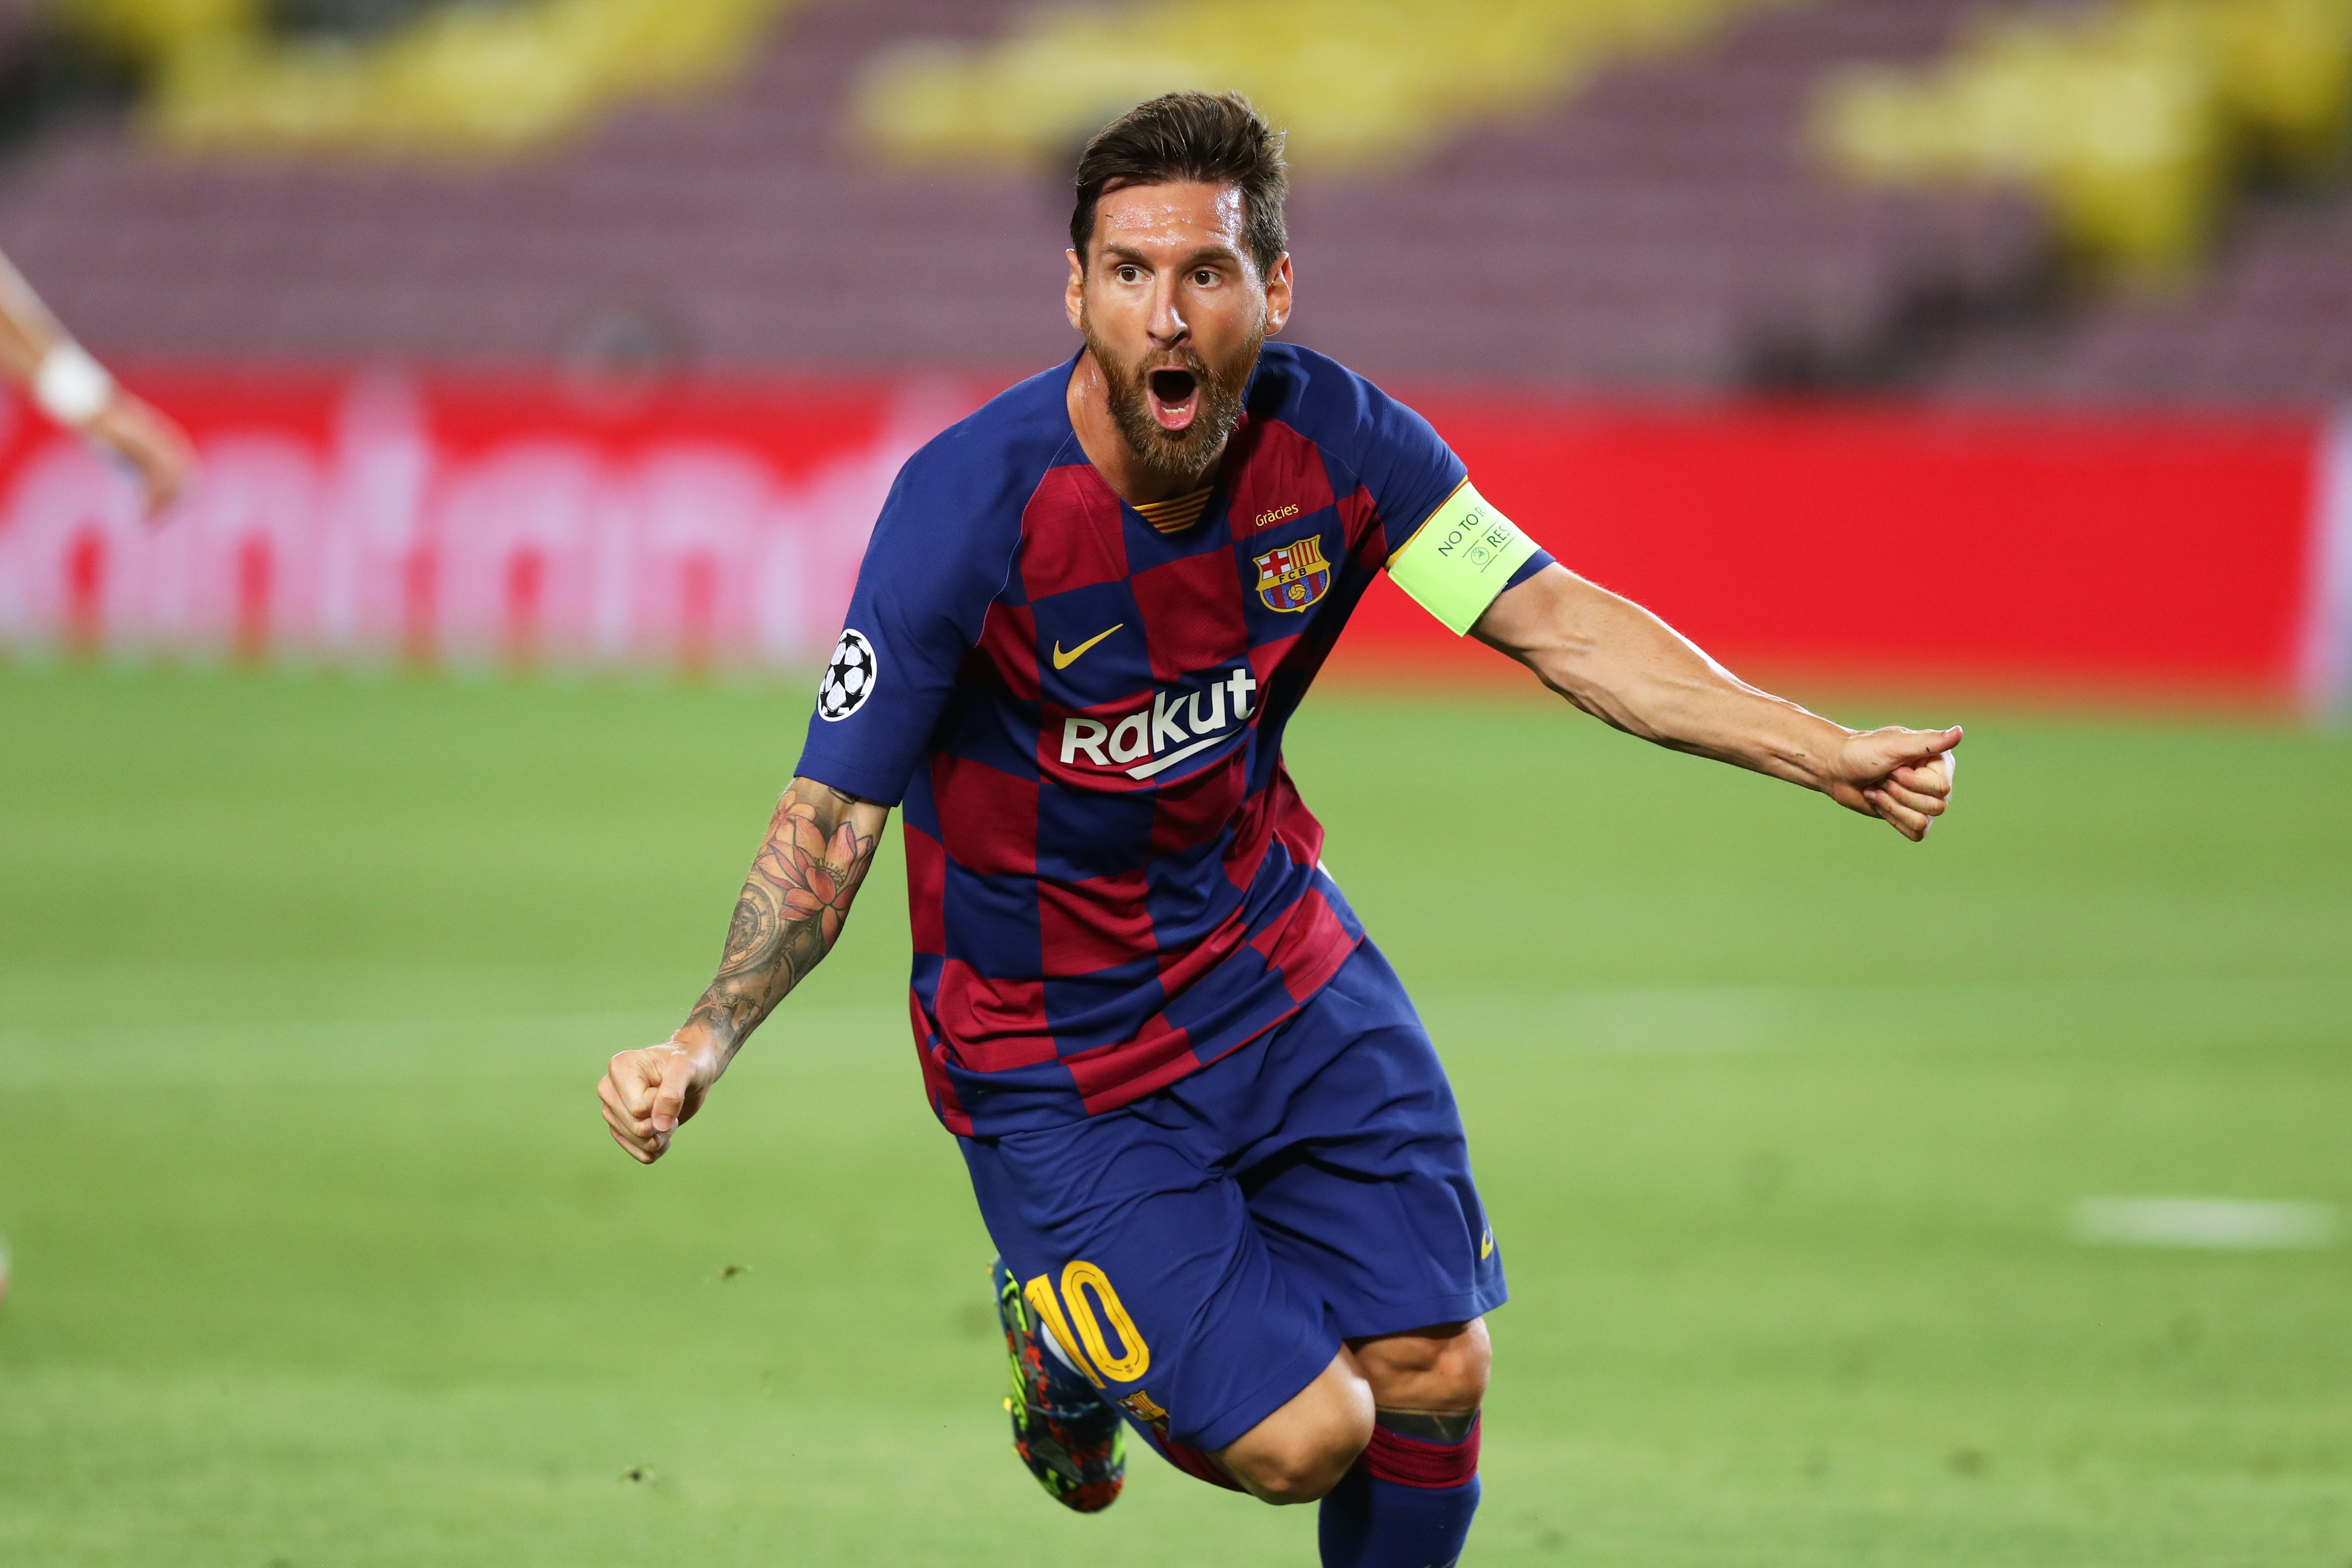 El missatge encoratjador de Messi a la Champions després de guanyar el Nàpols